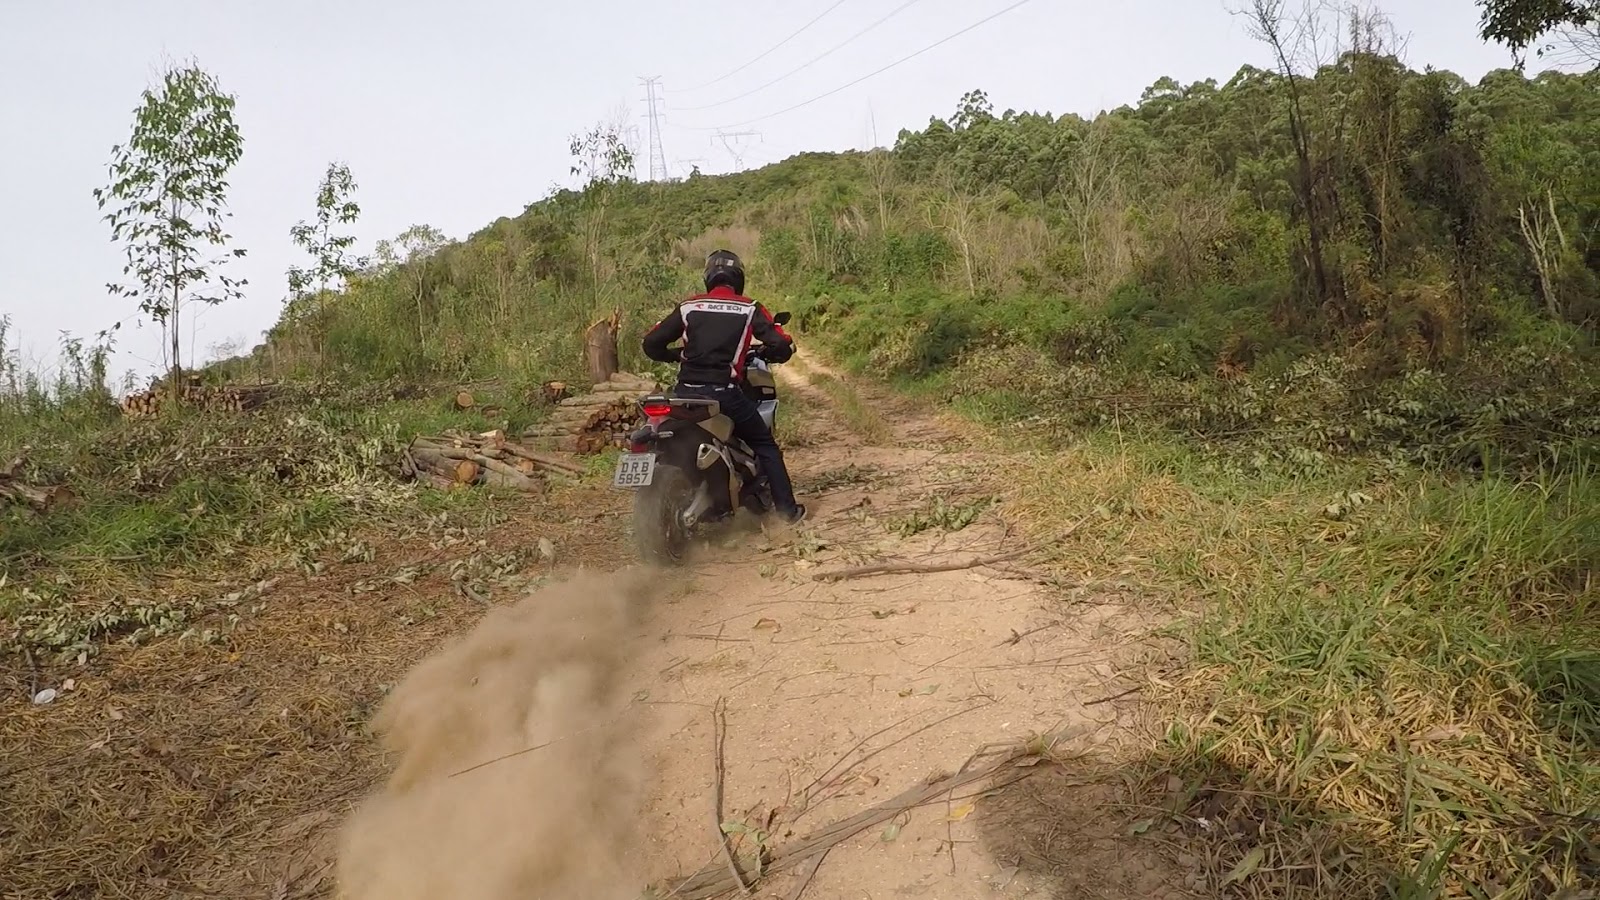 Kit adesivo moto cross trilha honda crf 230 2015 0,20mm 120 em Brasil